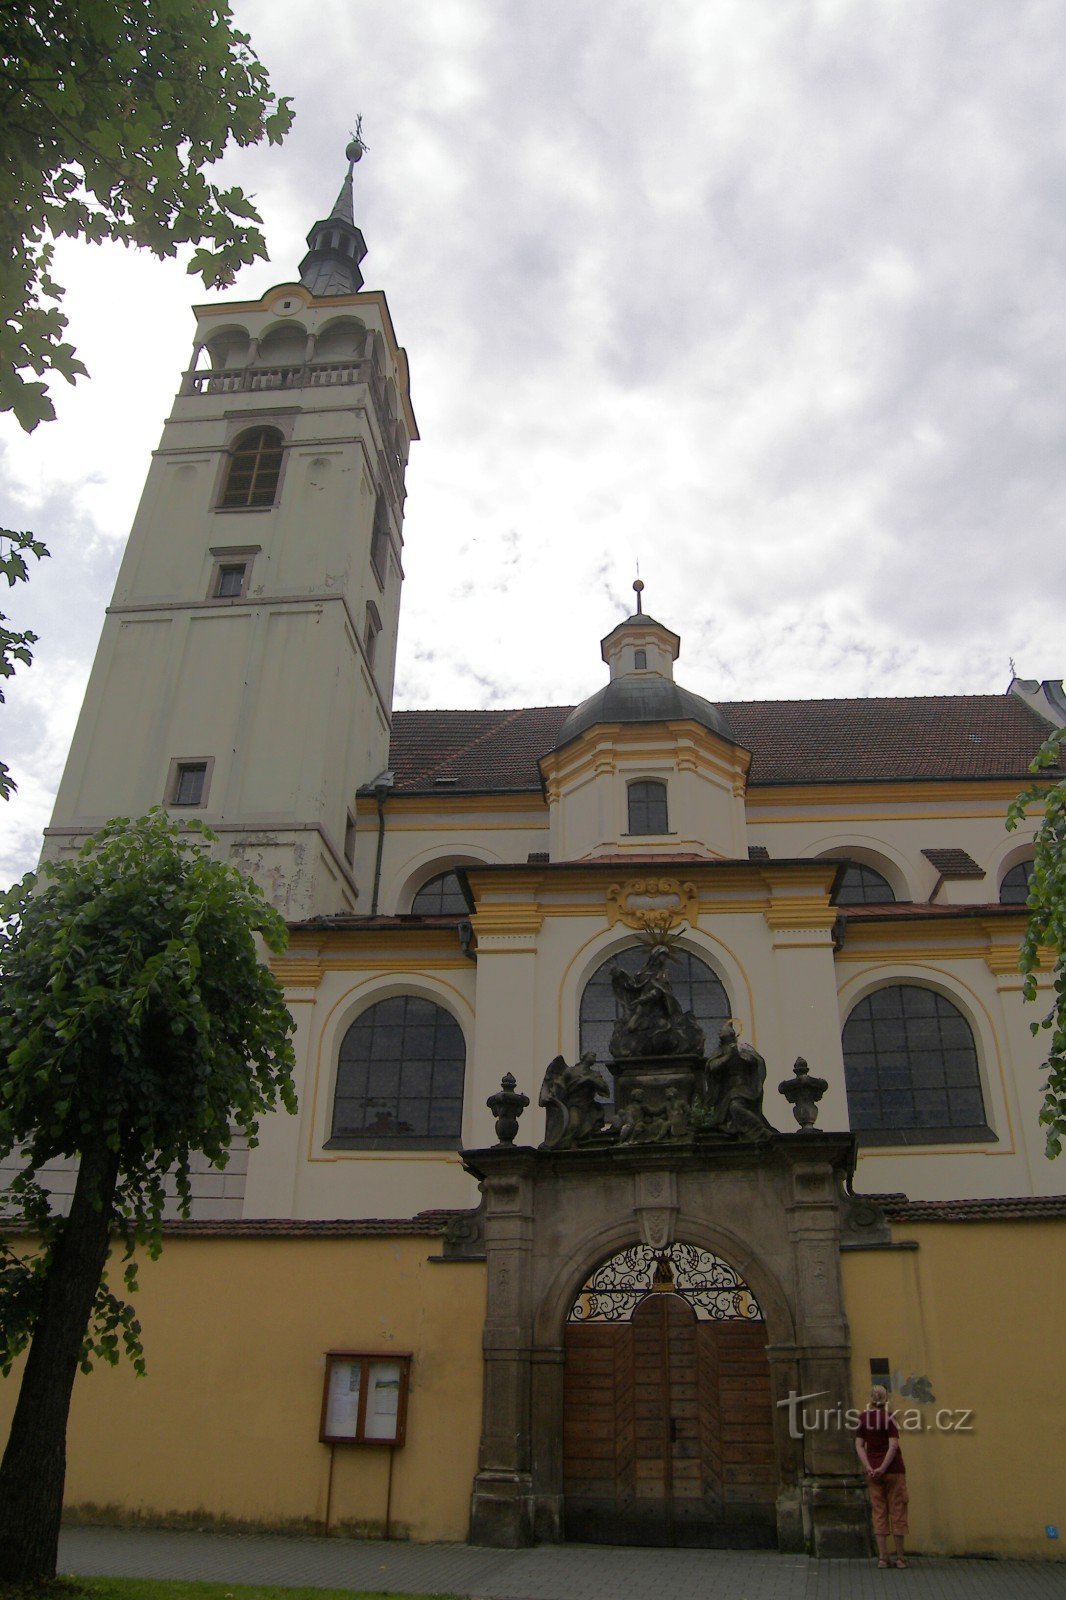 Lipník nad Bečvou - 圣彼得教堂弗朗蒂谢克·塞拉芬斯基